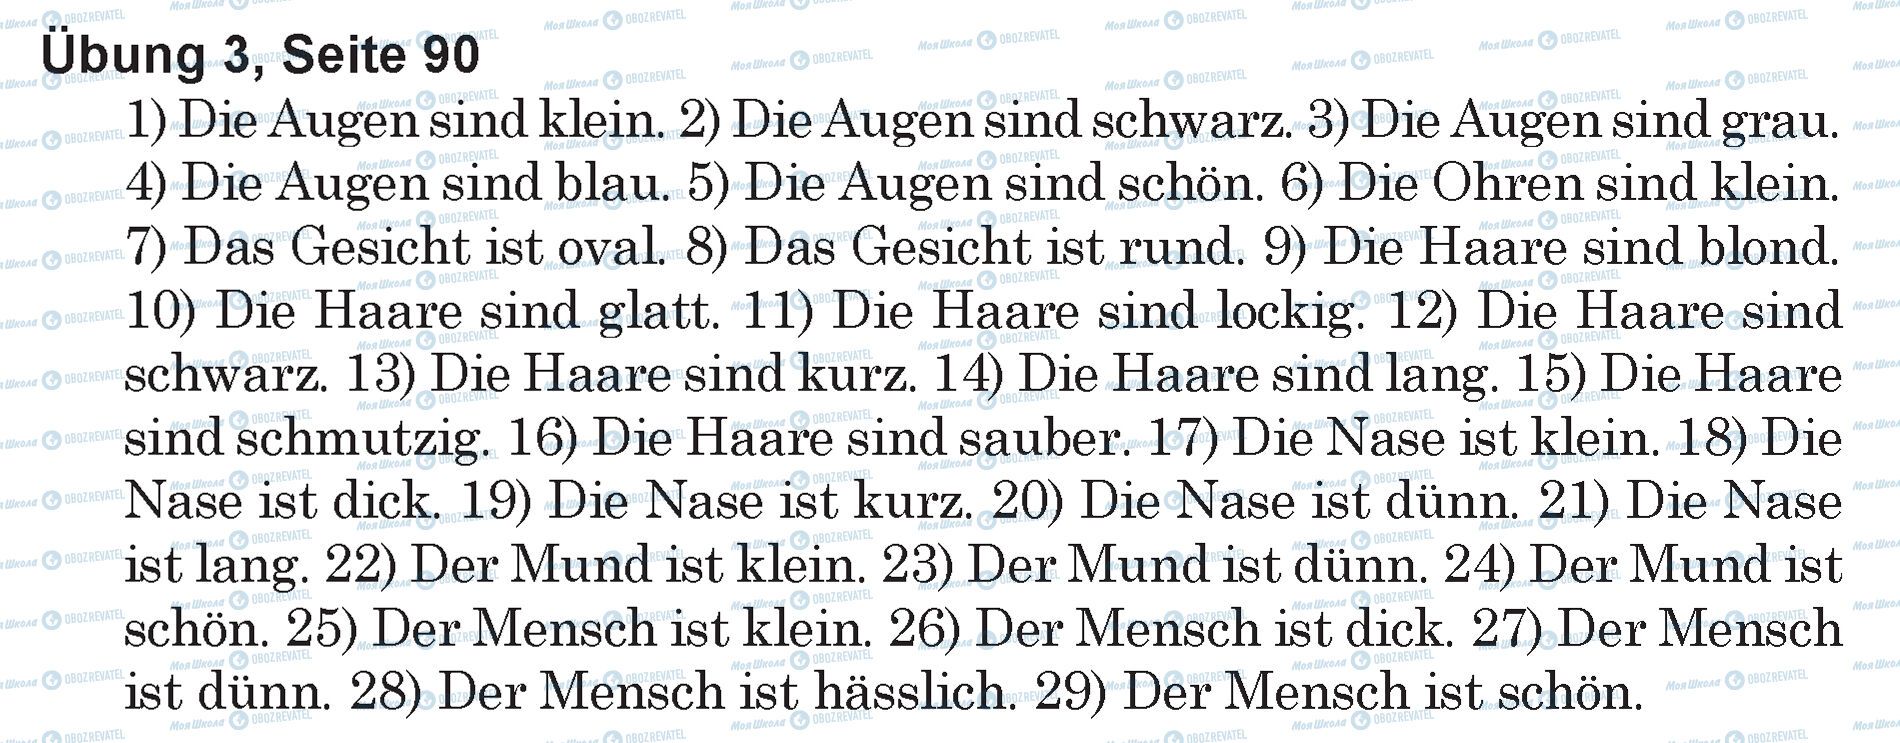 ГДЗ Немецкий язык 5 класс страница Ubung 3, Seite 90